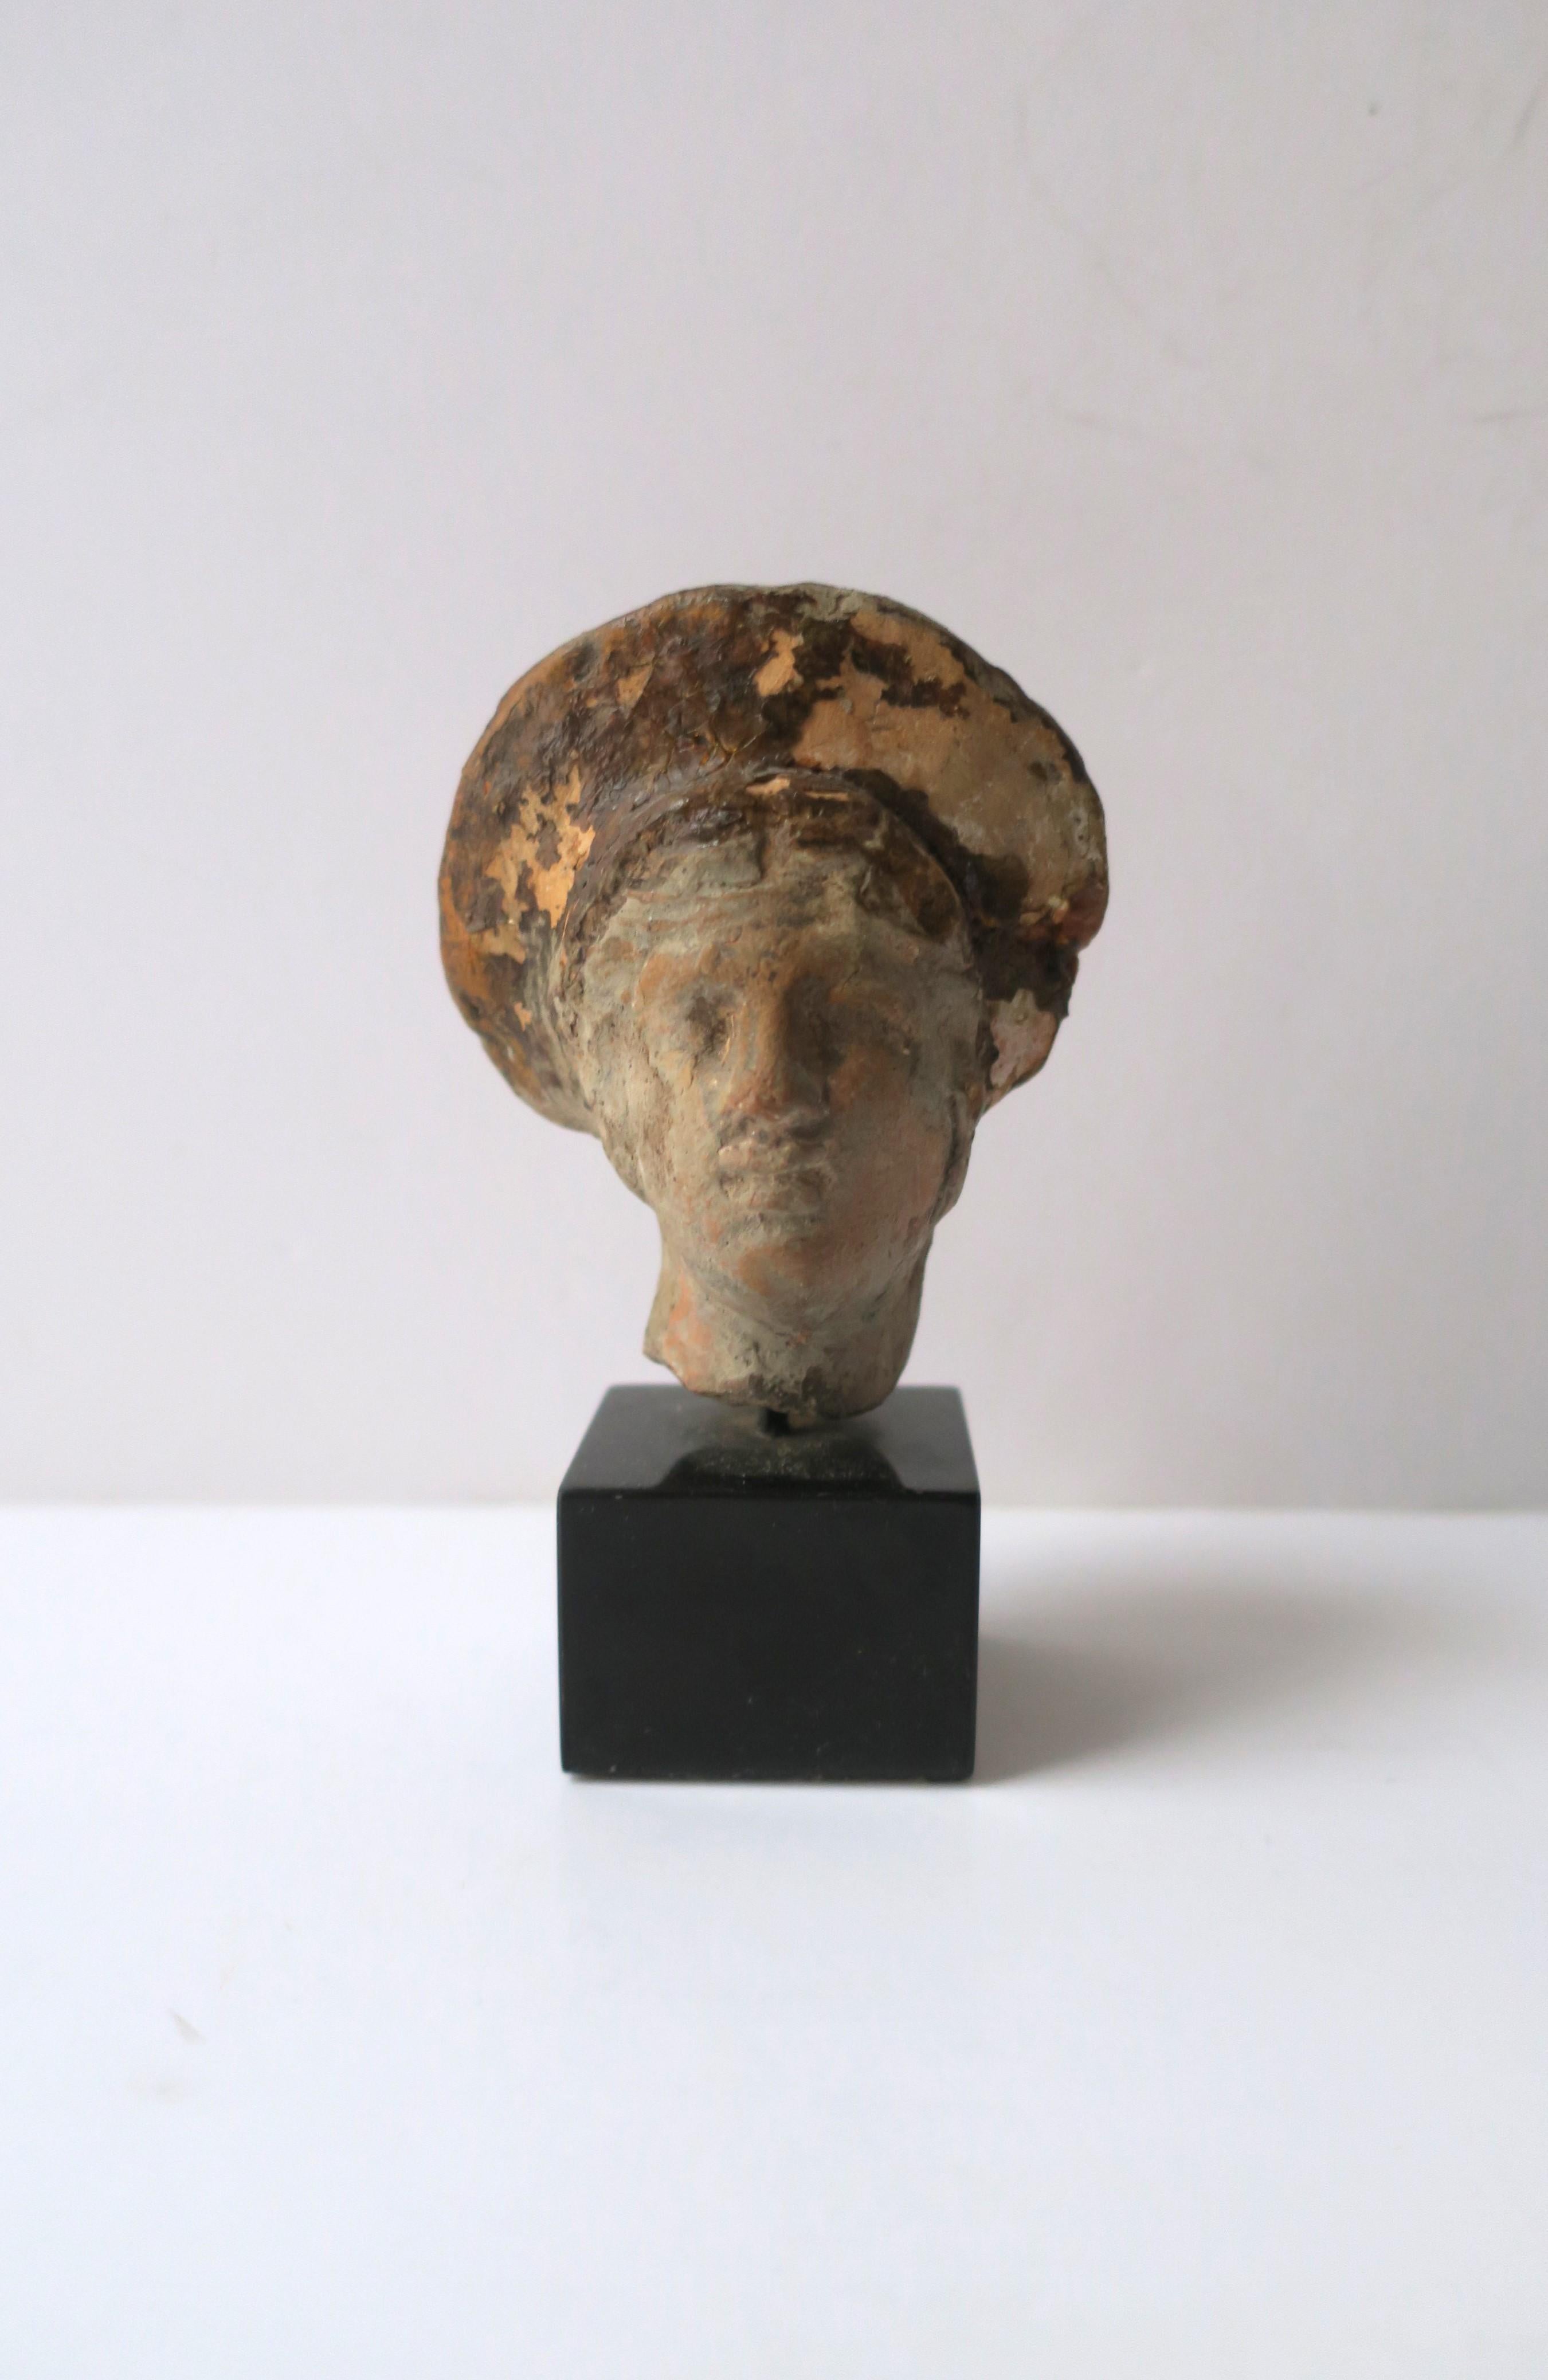 Handgefertigte Terrakotta-Kopfbüste einer griechischen Göttin auf einem Sockel aus schwarzem belgischem Marmor, Europa, Griechenland. Das genaue Datum ist nicht bekannt. Künstler/Bildhauer unbekannt. Diese schöne Skulptur kann gut auf einem